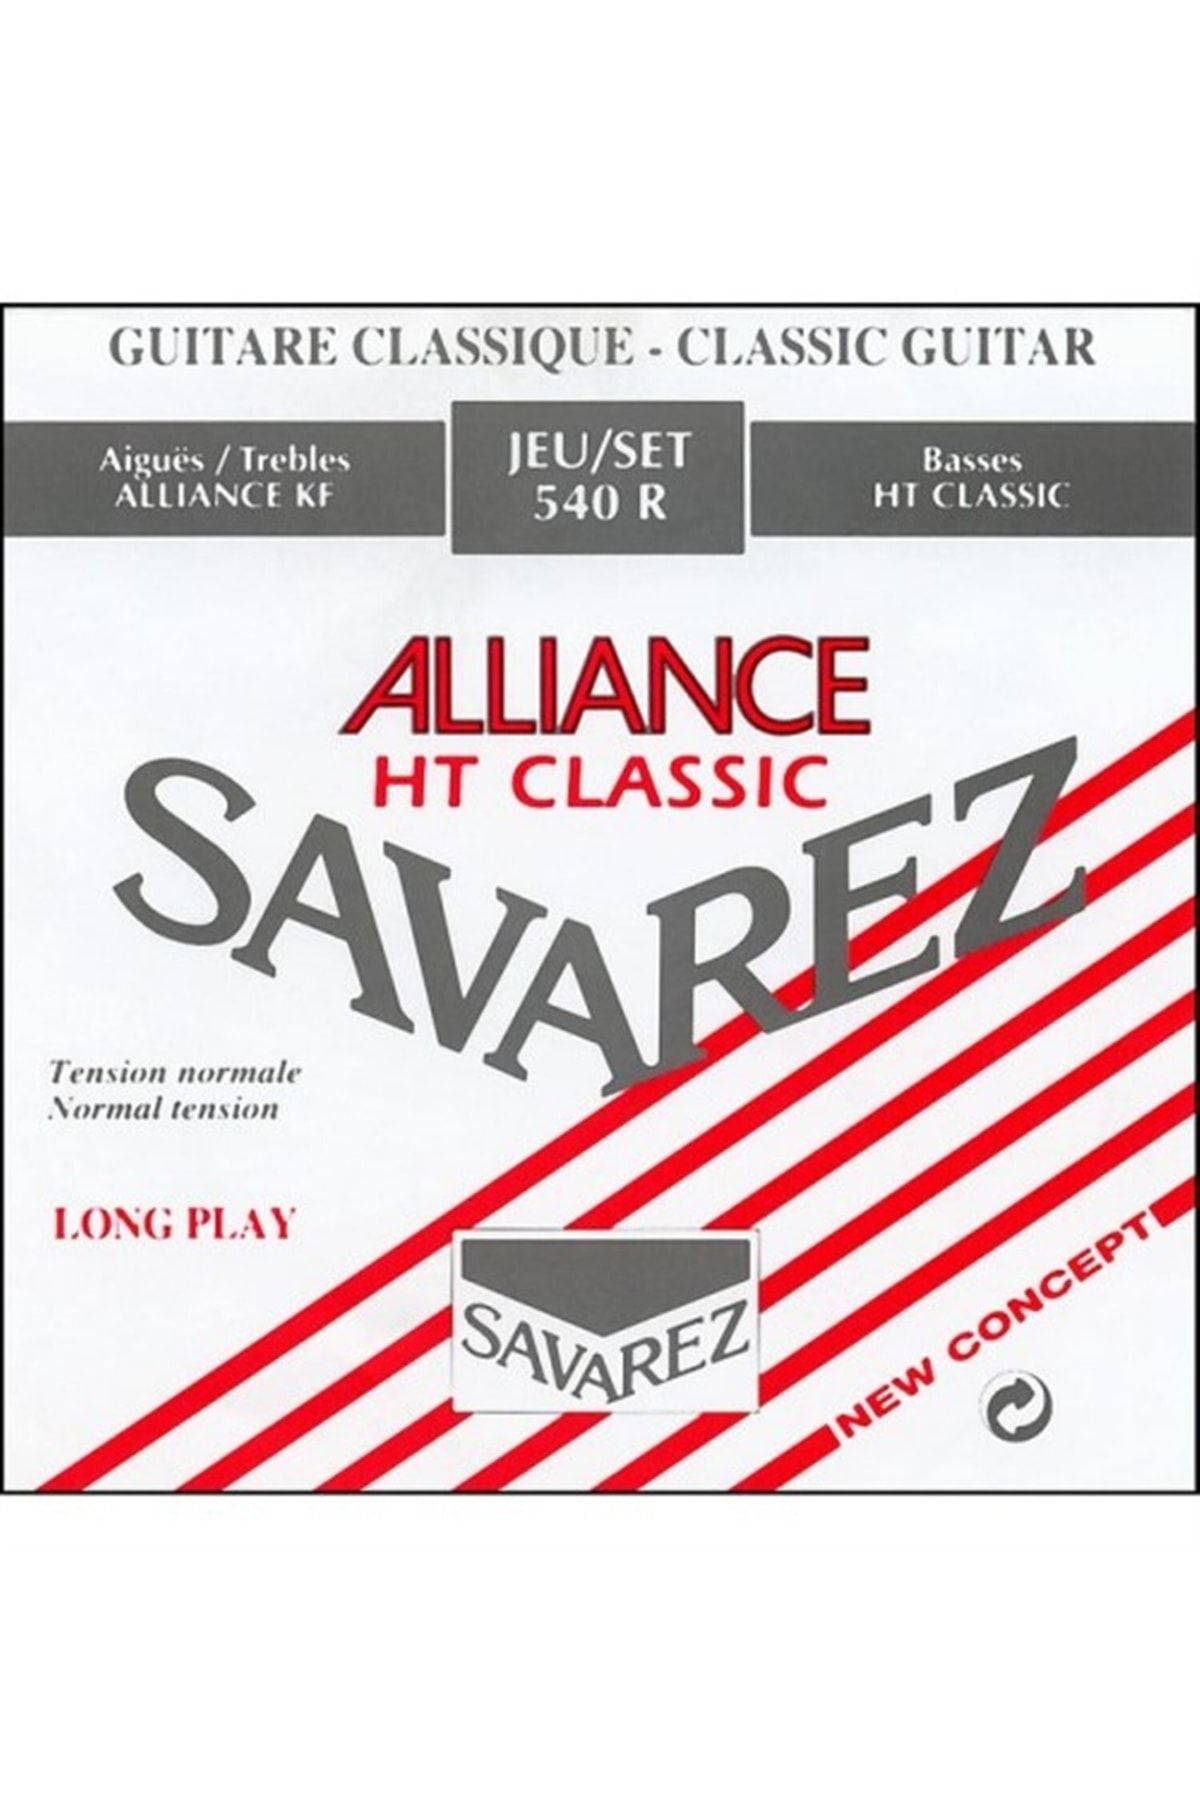 Savarez струны для классической гитары. Струны для классической гитары. Savarez Carbon. Саварес струны. Струны для классической гитары отечественные.